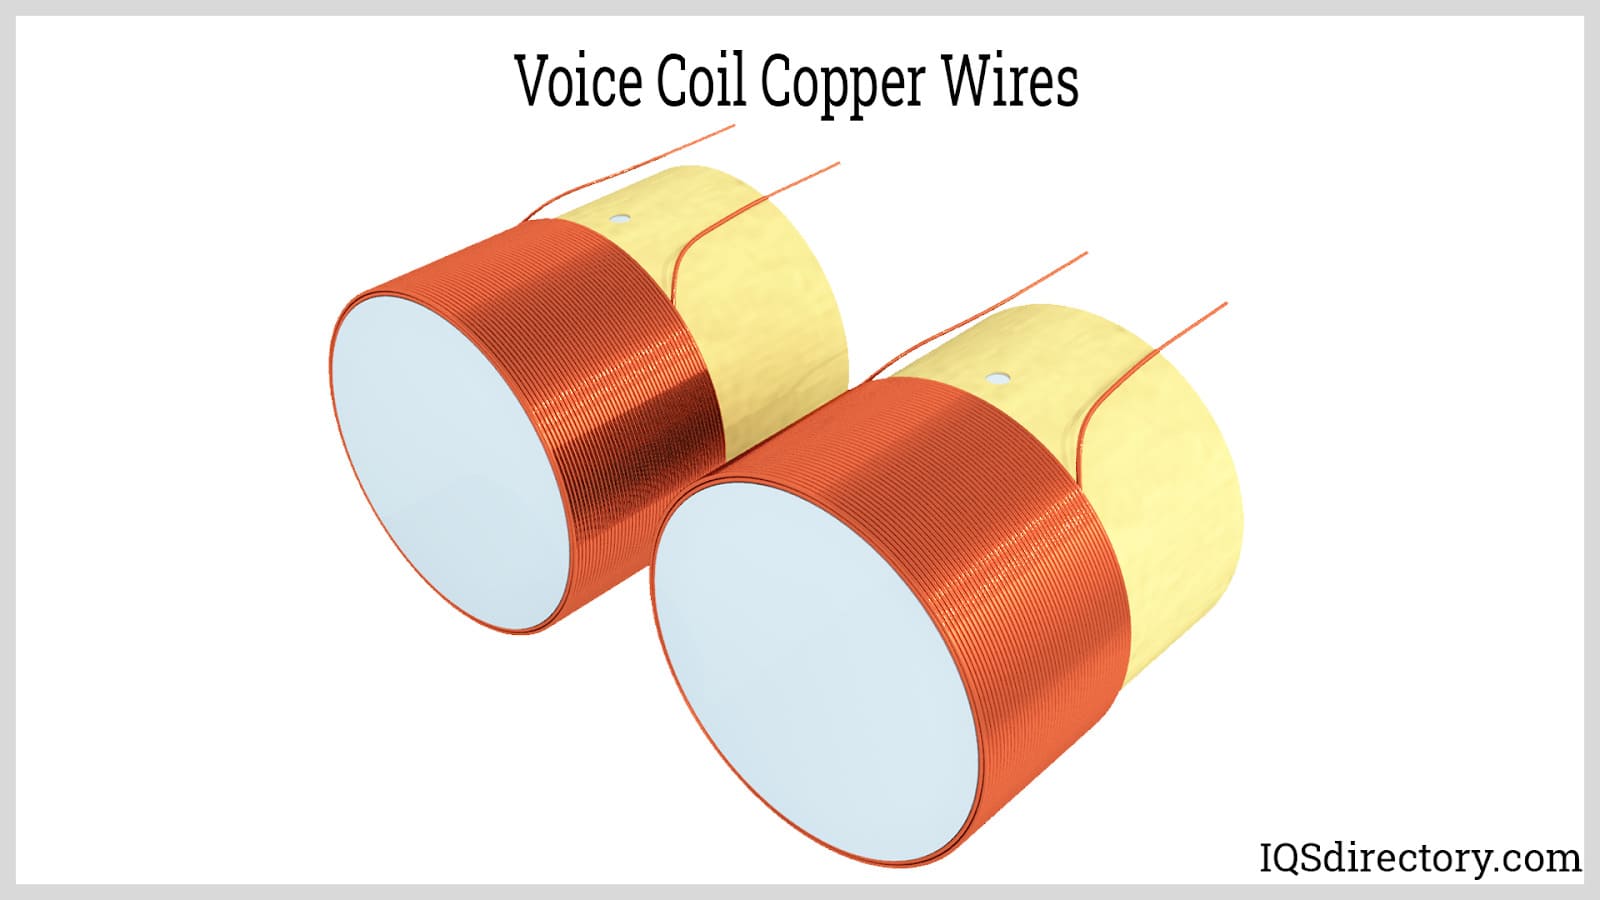 Voice Coil Copper Wires